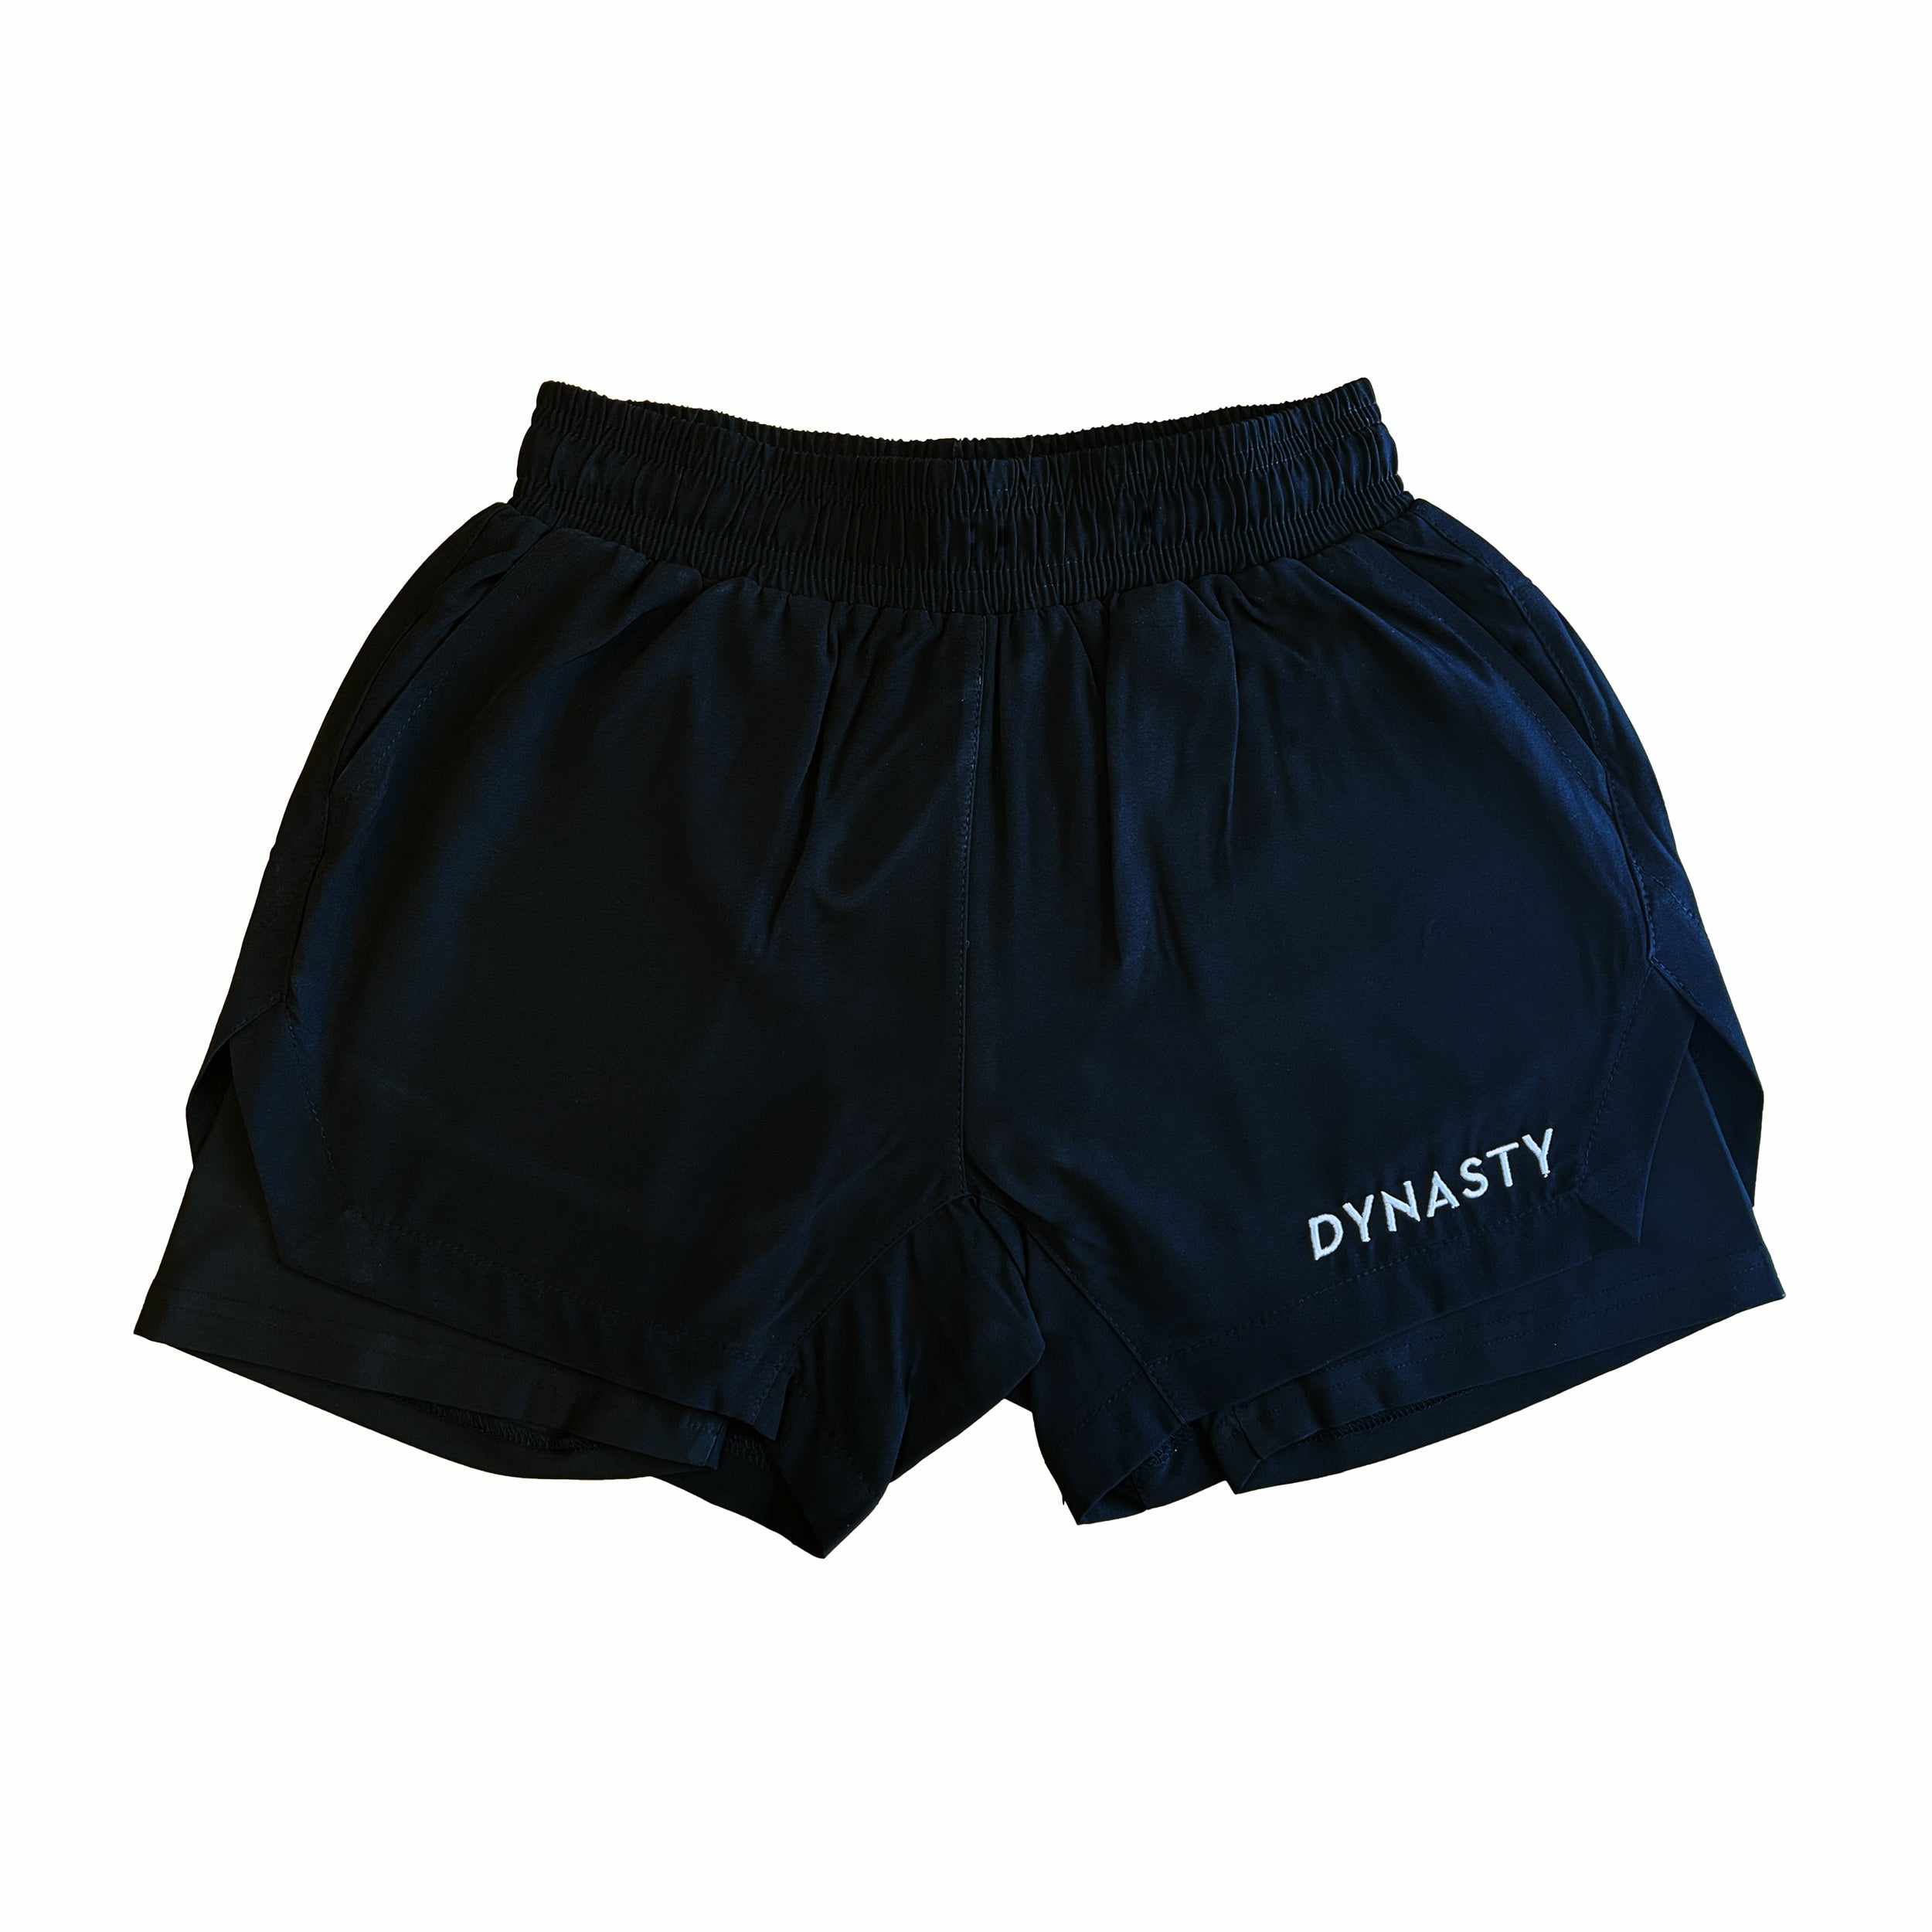 Dynasty Hybrid Pro Training Shorts (Black)